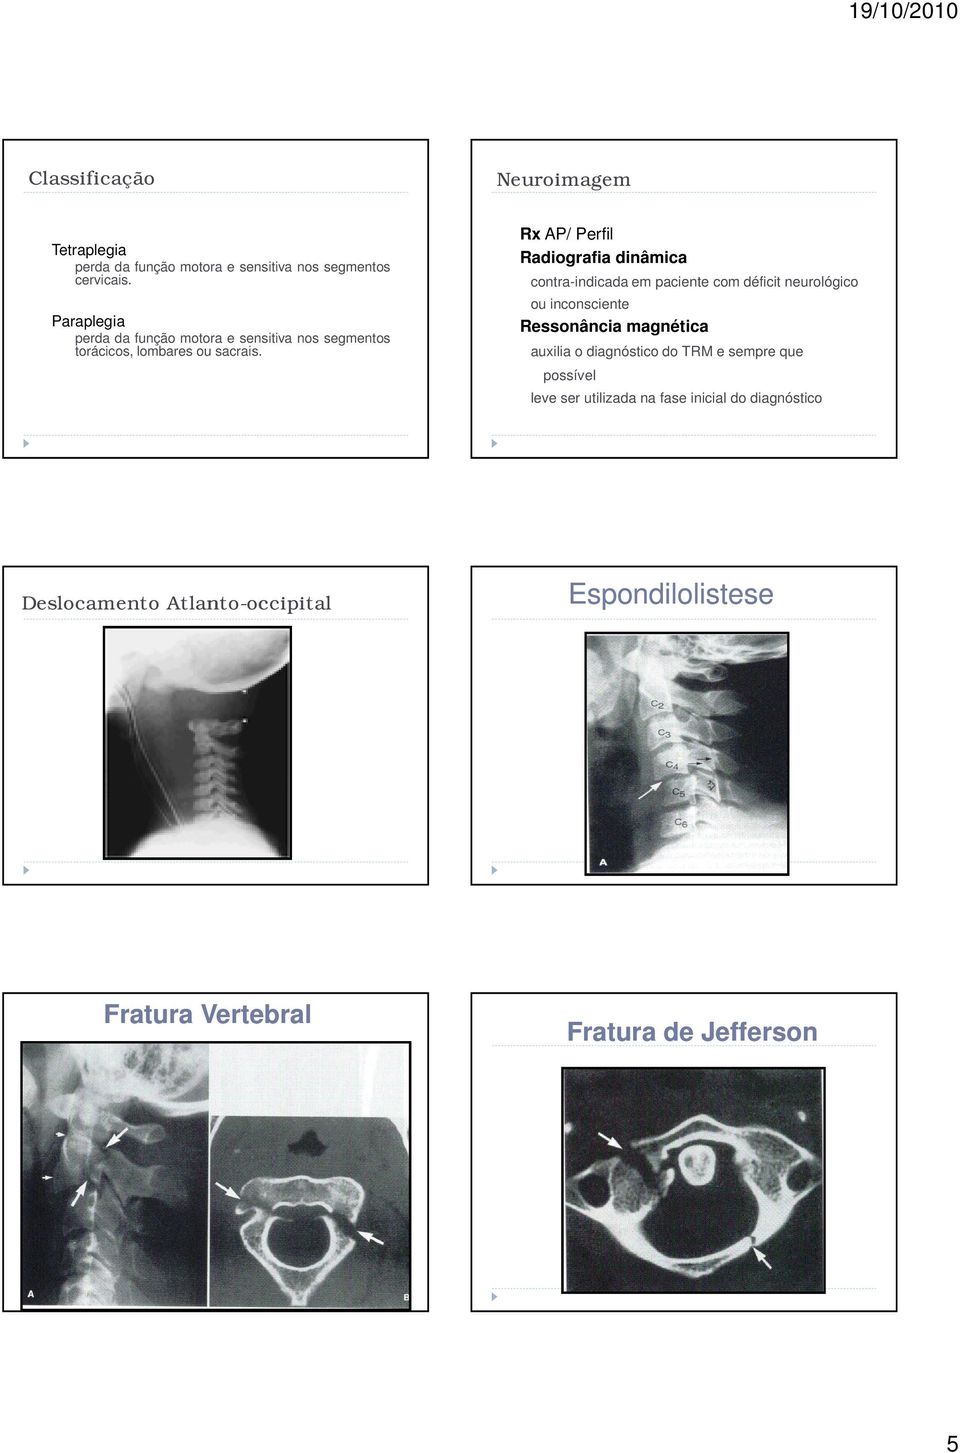 - Rx AP/ Perfil - Radiografia dinâmica contra-indicada em paciente com déficit neurológico ou inconsciente - Ressonância